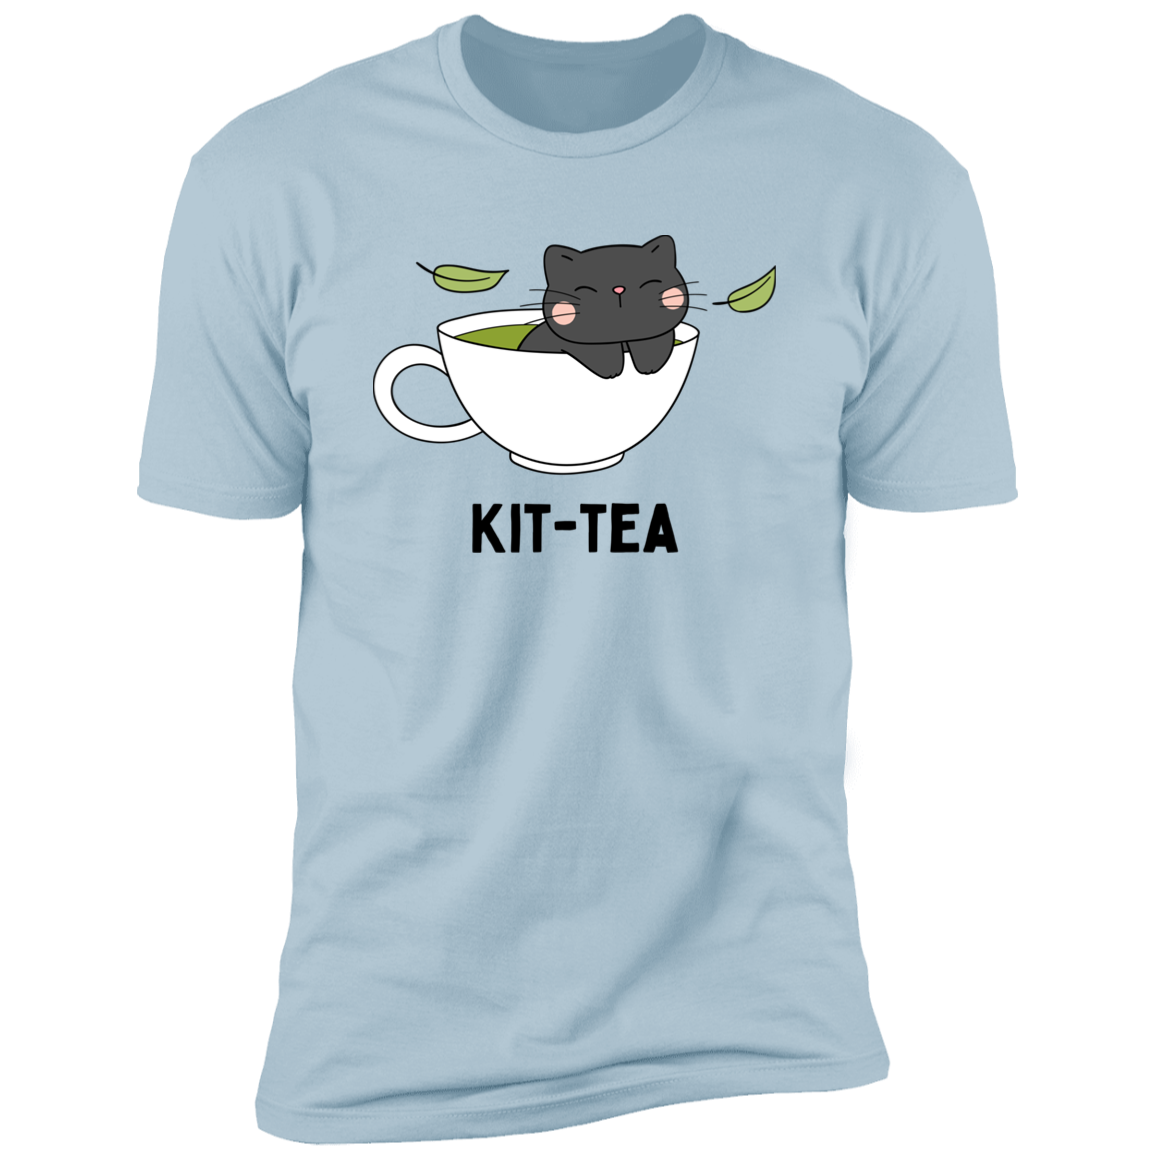 Kitt-Tea T-Shirt, kitty tea shirt, Cat Shirt for humans, funny cat shirt, in light blue